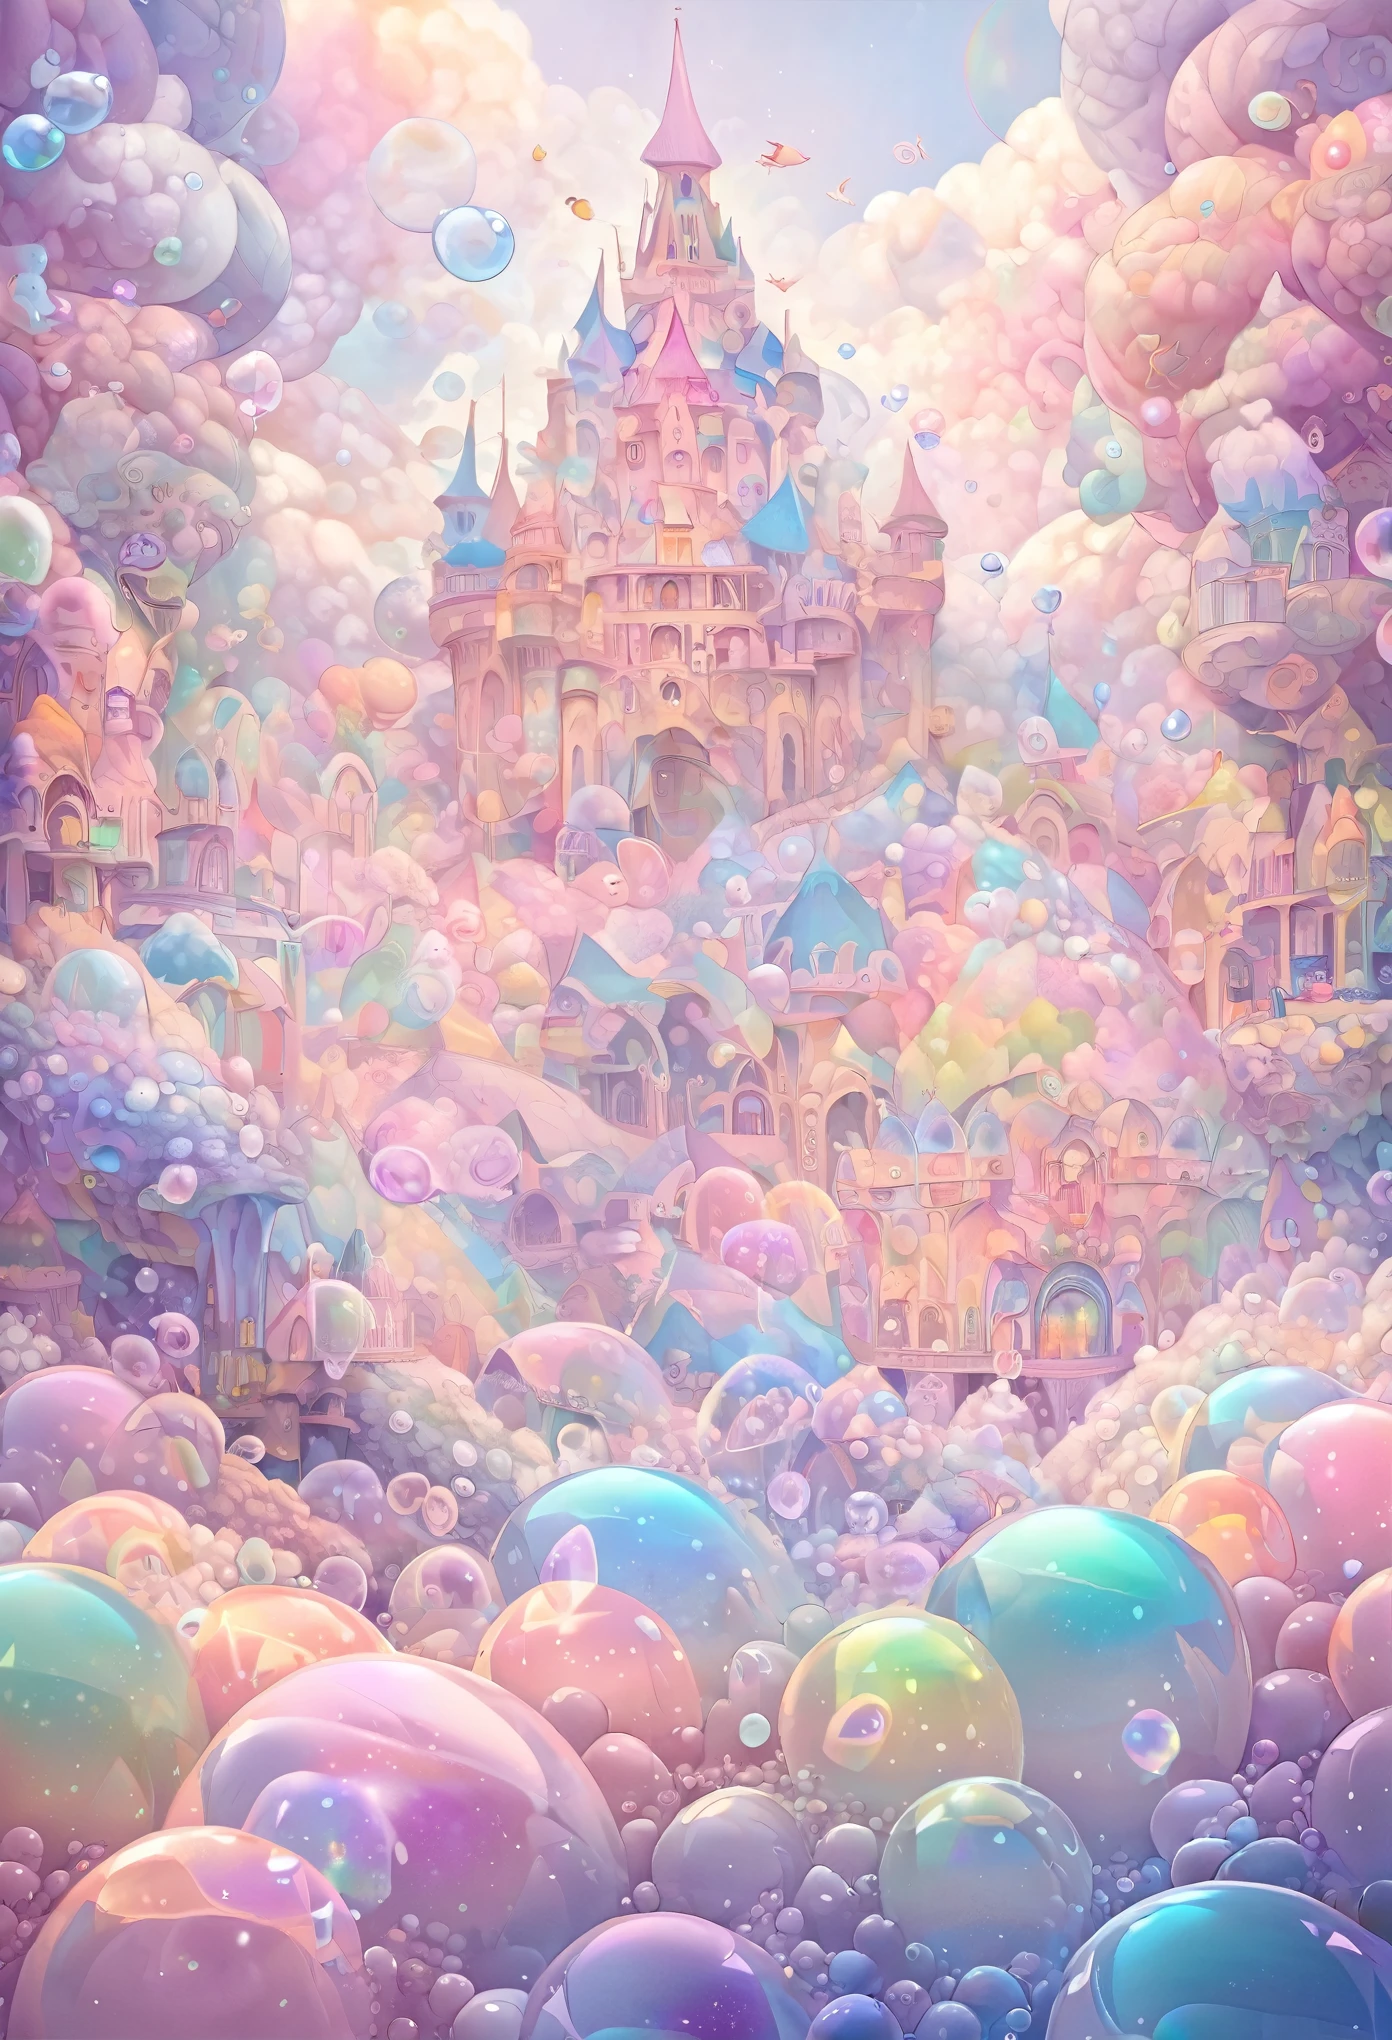 最好的质量, 非常好, 16千, 荒谬至极, 极其详细, 细腻而动感, 梦想世界, 充满柔和色彩的神秘城堡, 蓬松的, 看起来像糖果的彩虹色肥皂泡.